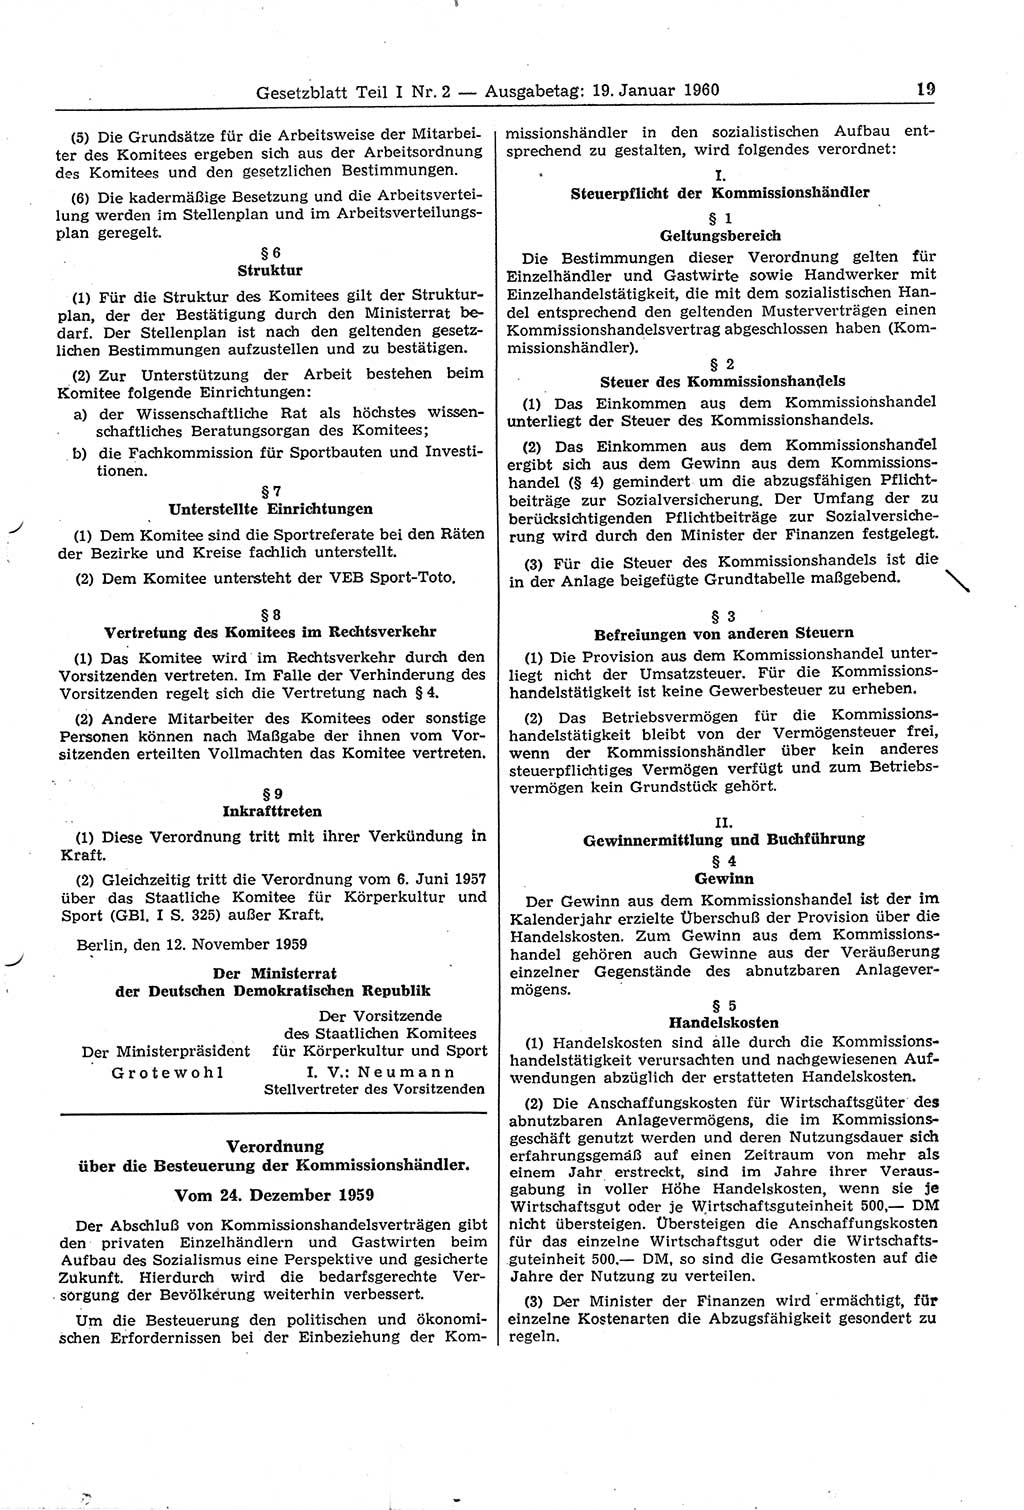 Gesetzblatt (GBl.) der Deutschen Demokratischen Republik (DDR) Teil Ⅰ 1960, Seite 19 (GBl. DDR Ⅰ 1960, S. 19)